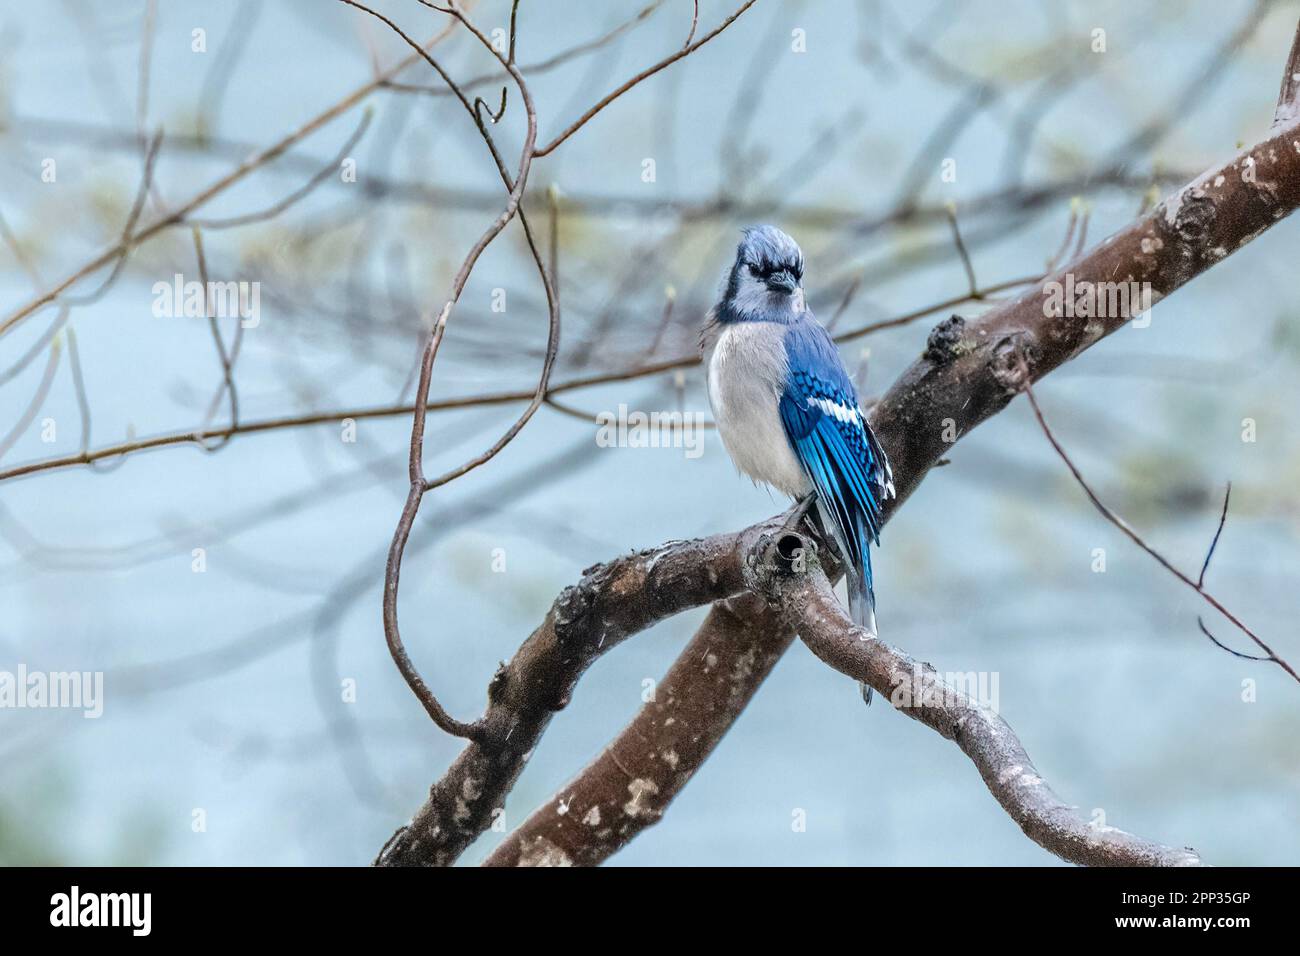 Un Bluebird orientale riposa su un ramo dell'albero tra i voli per raccogliere il materiale di nidificazione per la sua deposizione di uovo imminente. Foto Stock